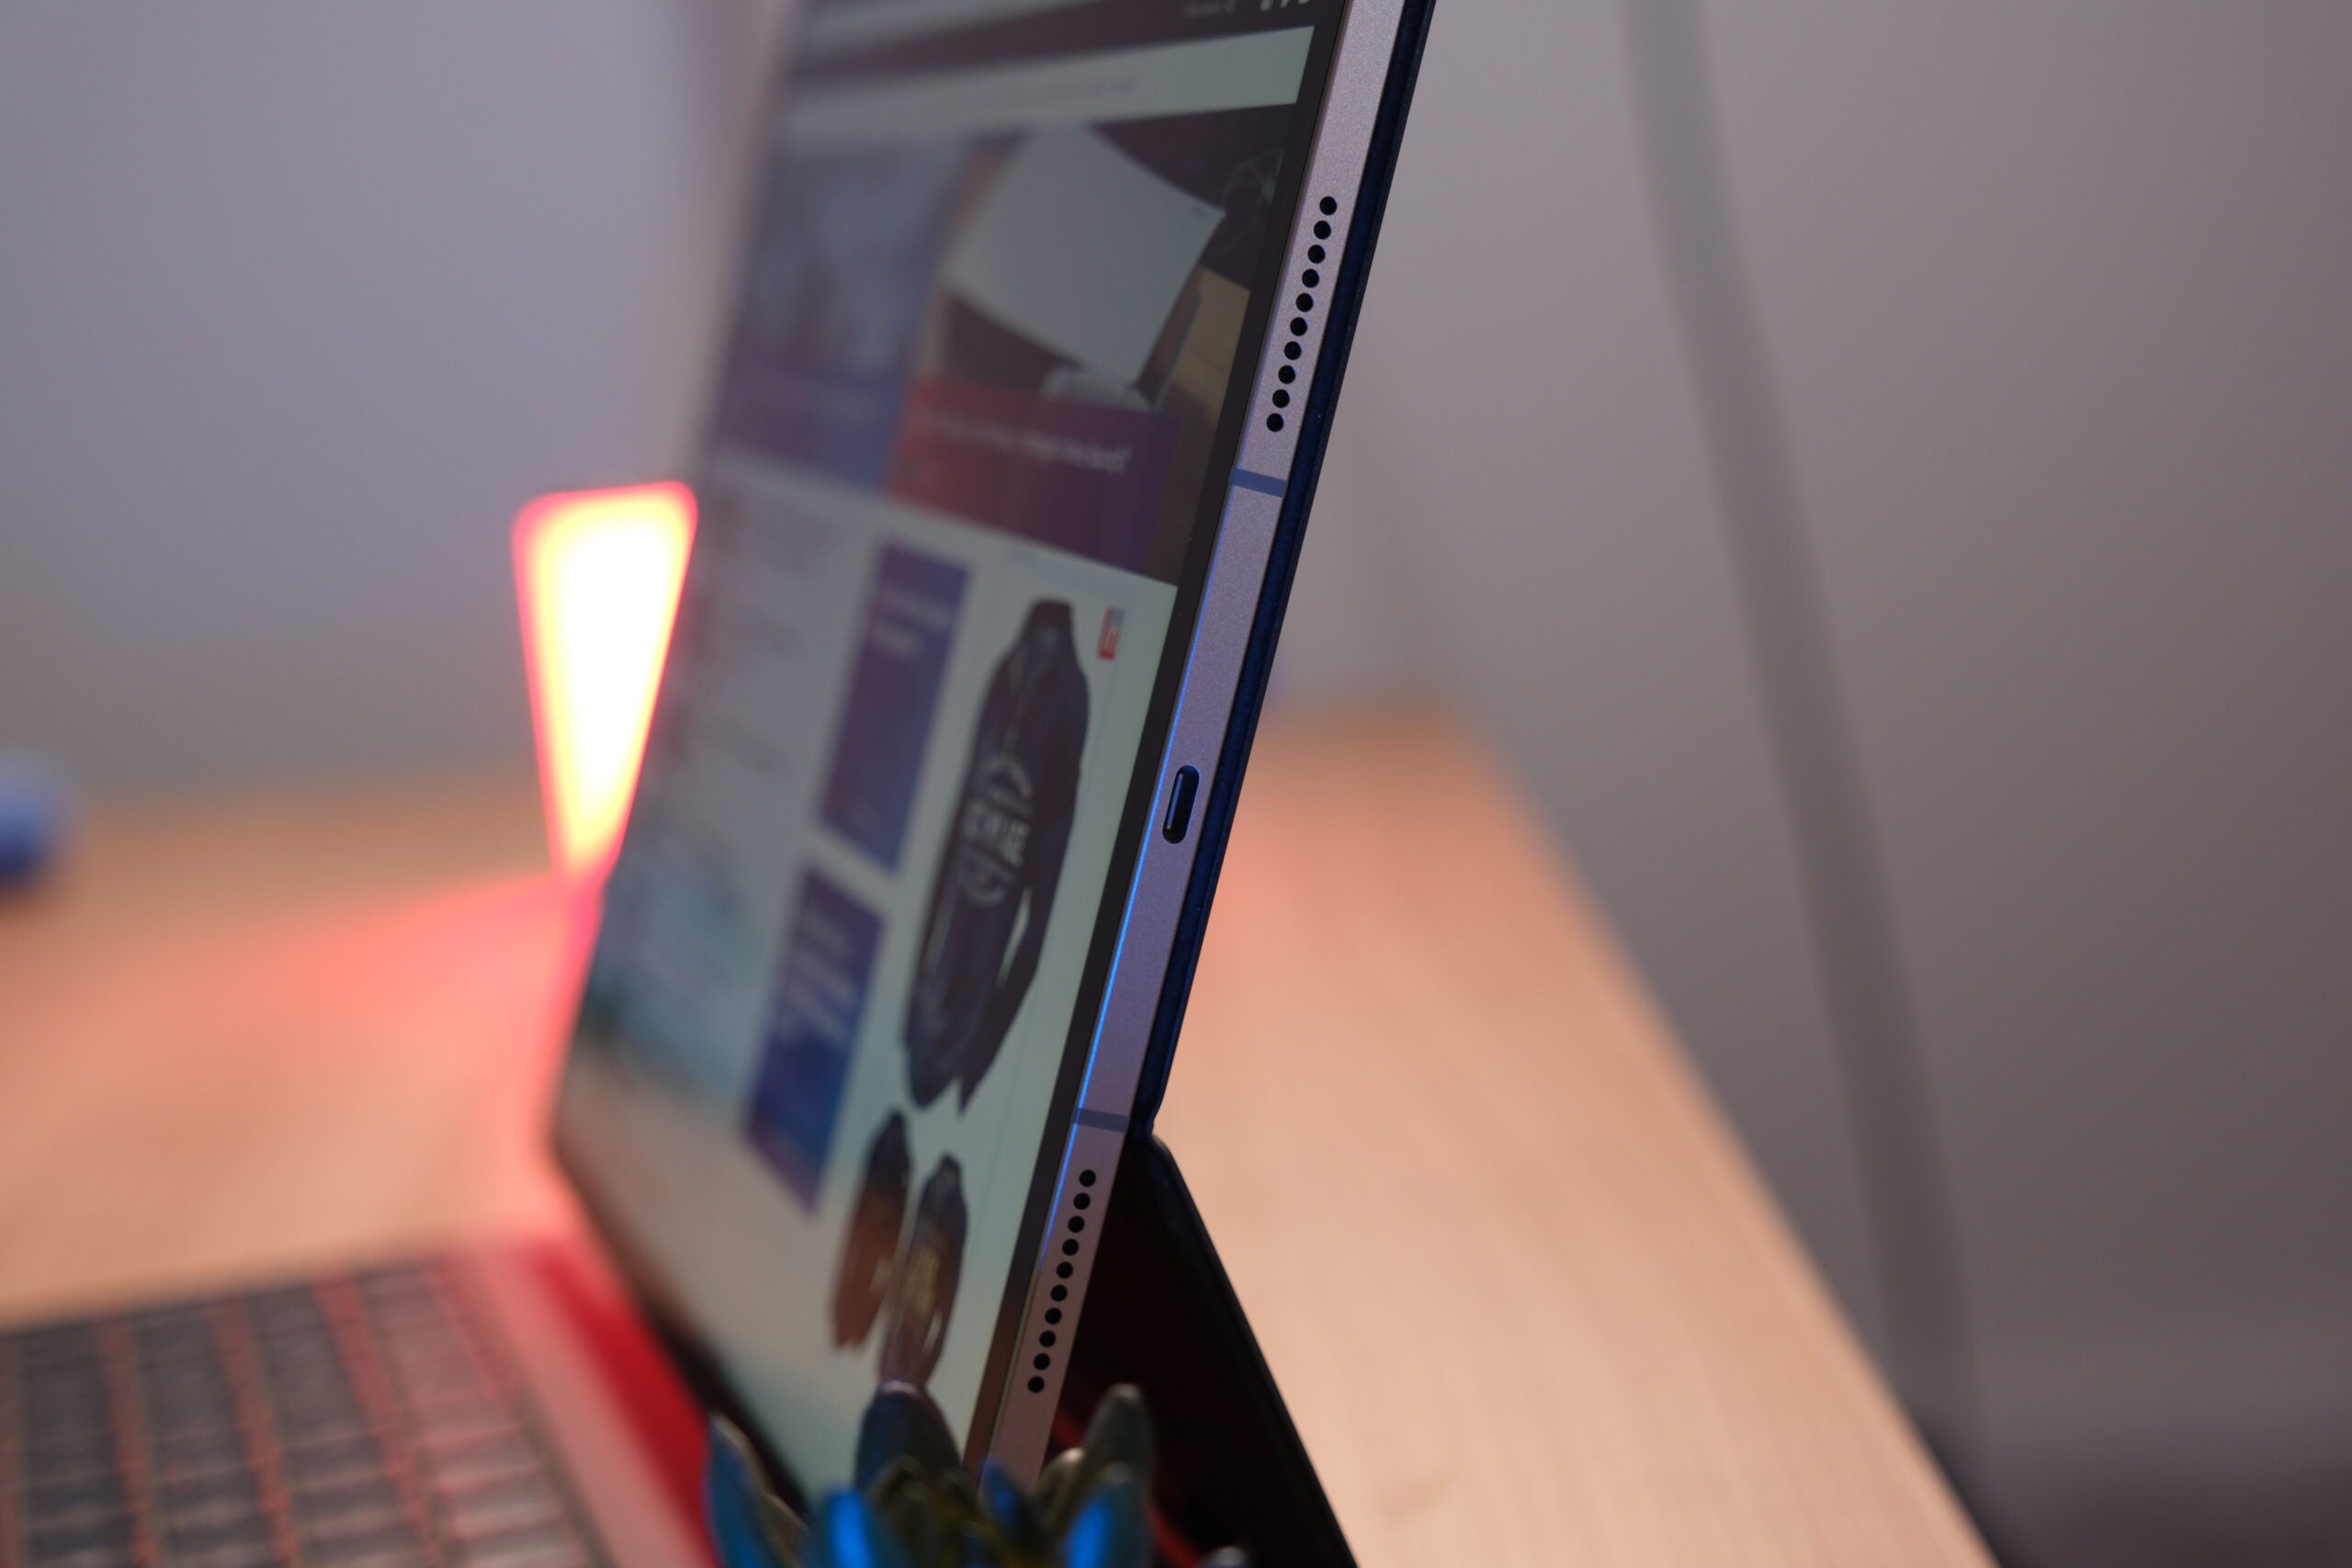 La trama del iPad Fold se complica con el reciente regreso del MacBook plegable